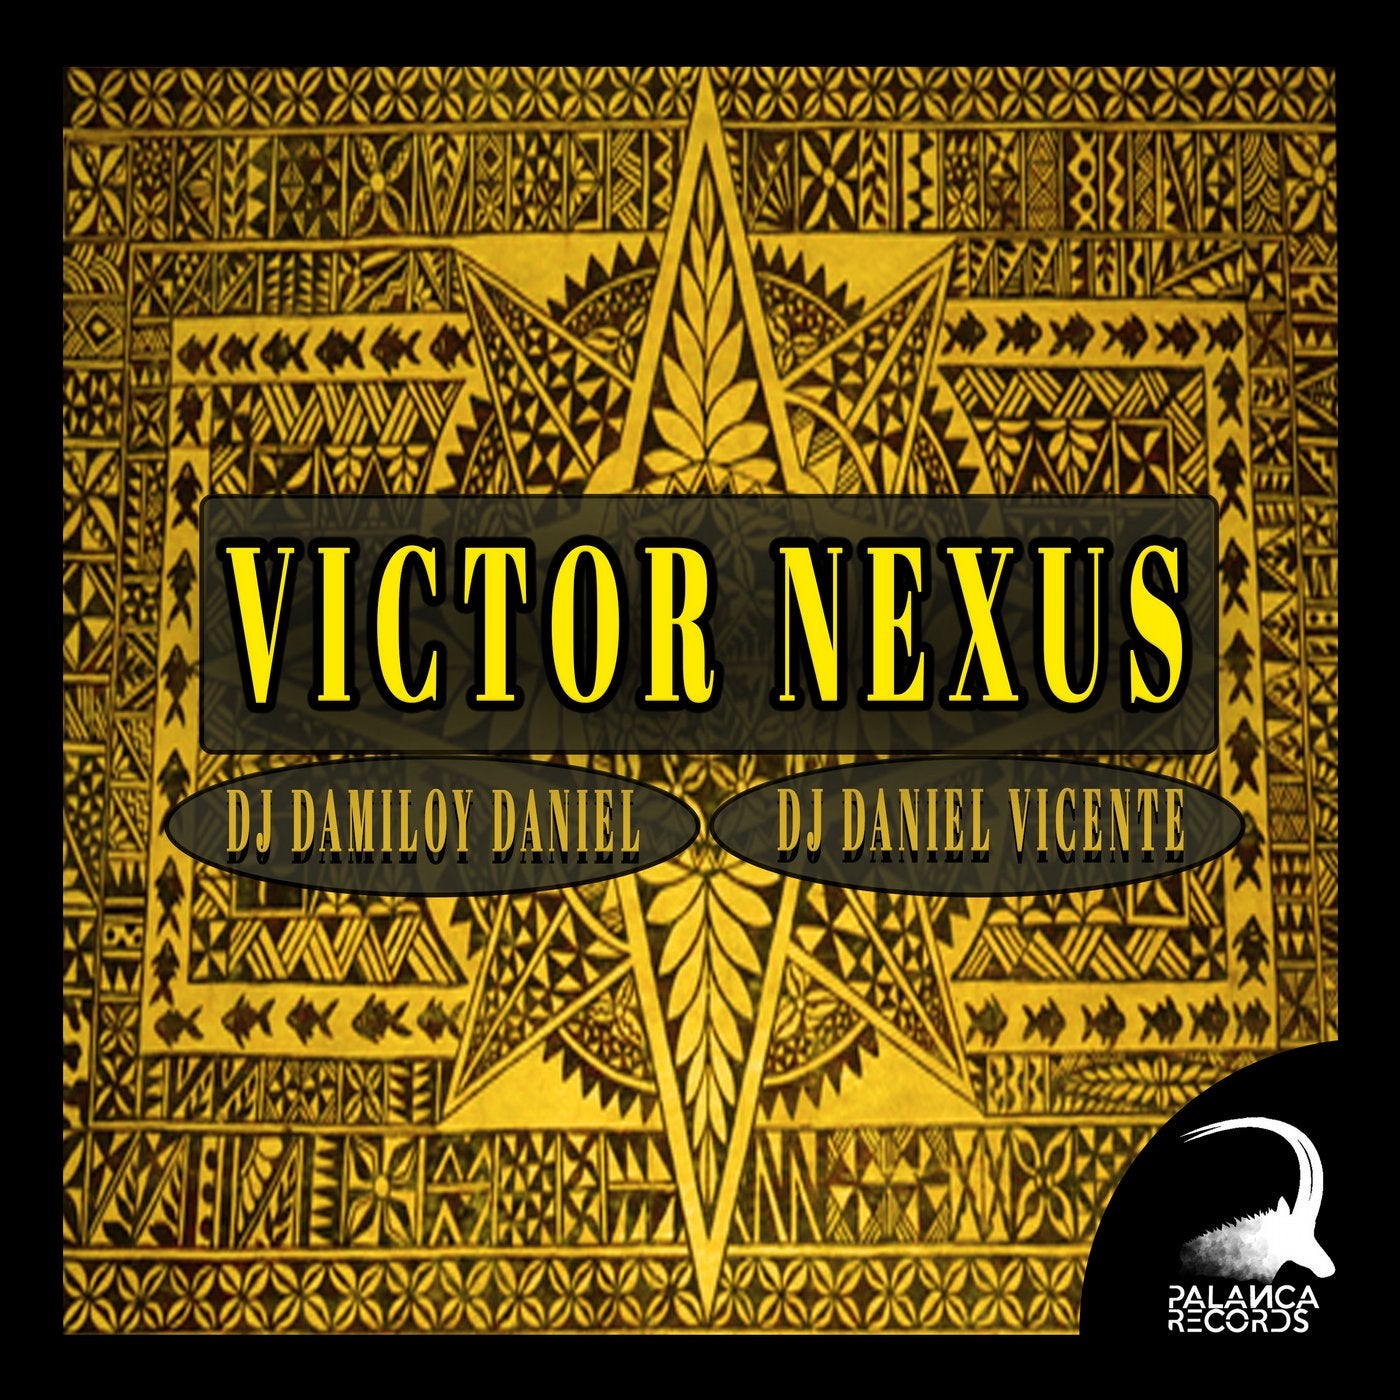 release date for nexus 2019